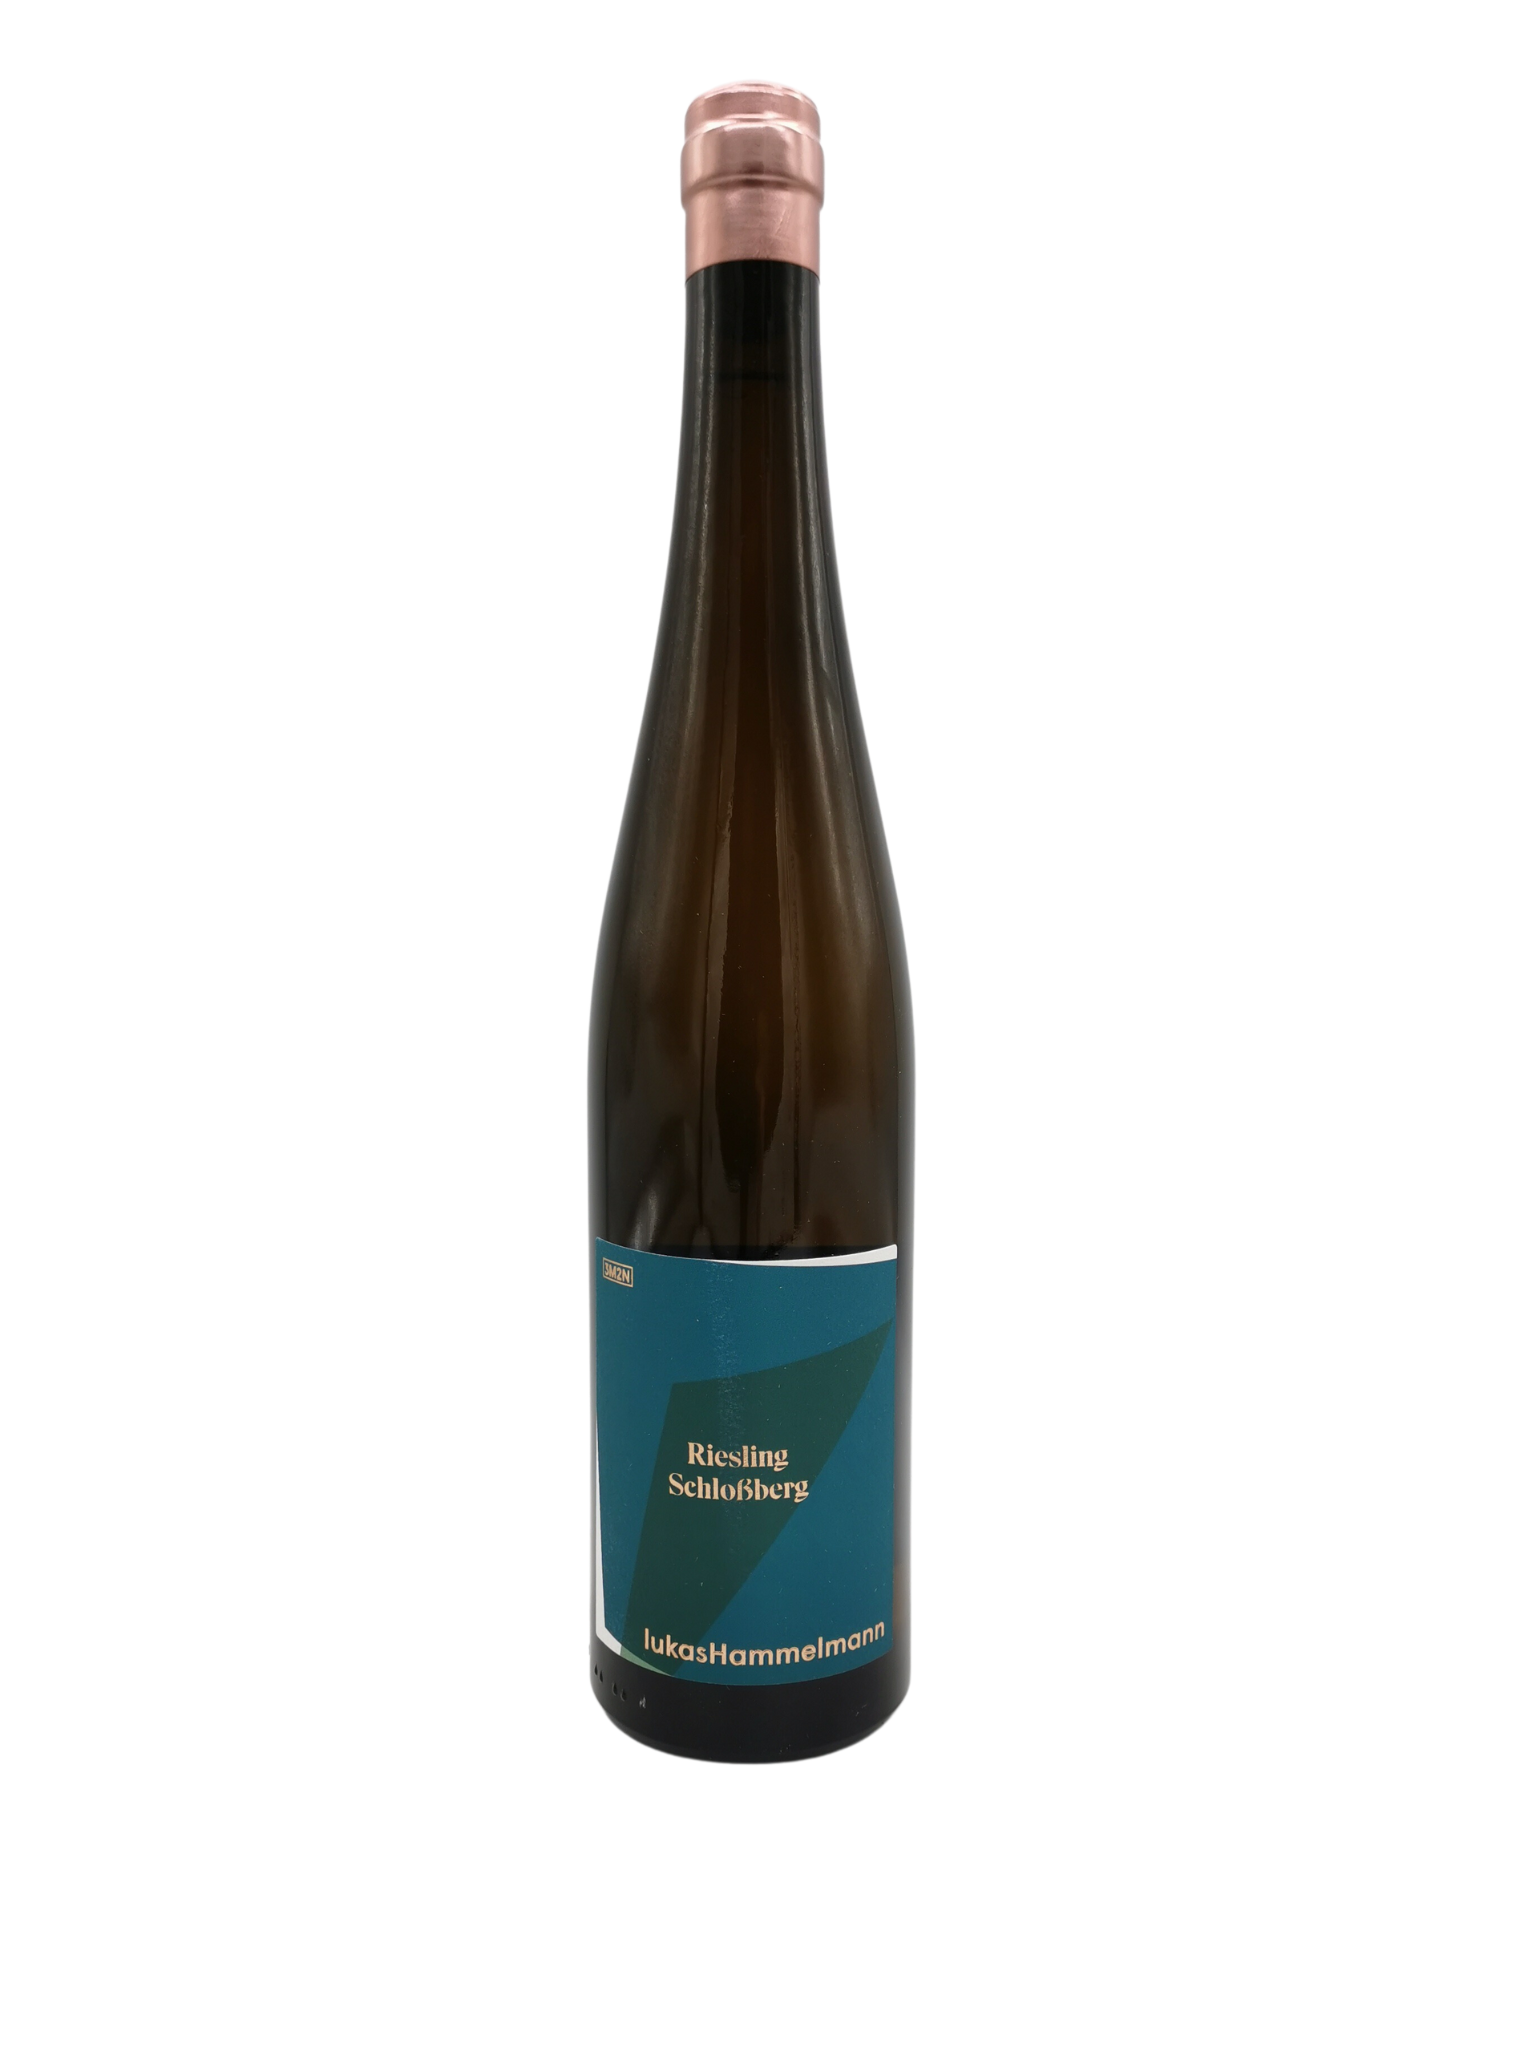 2021 Riesling Hambacher Schlossberg, Lukas Hammelmann-3m2n, Zeiskamer Weinmanufaktur, Pfalz